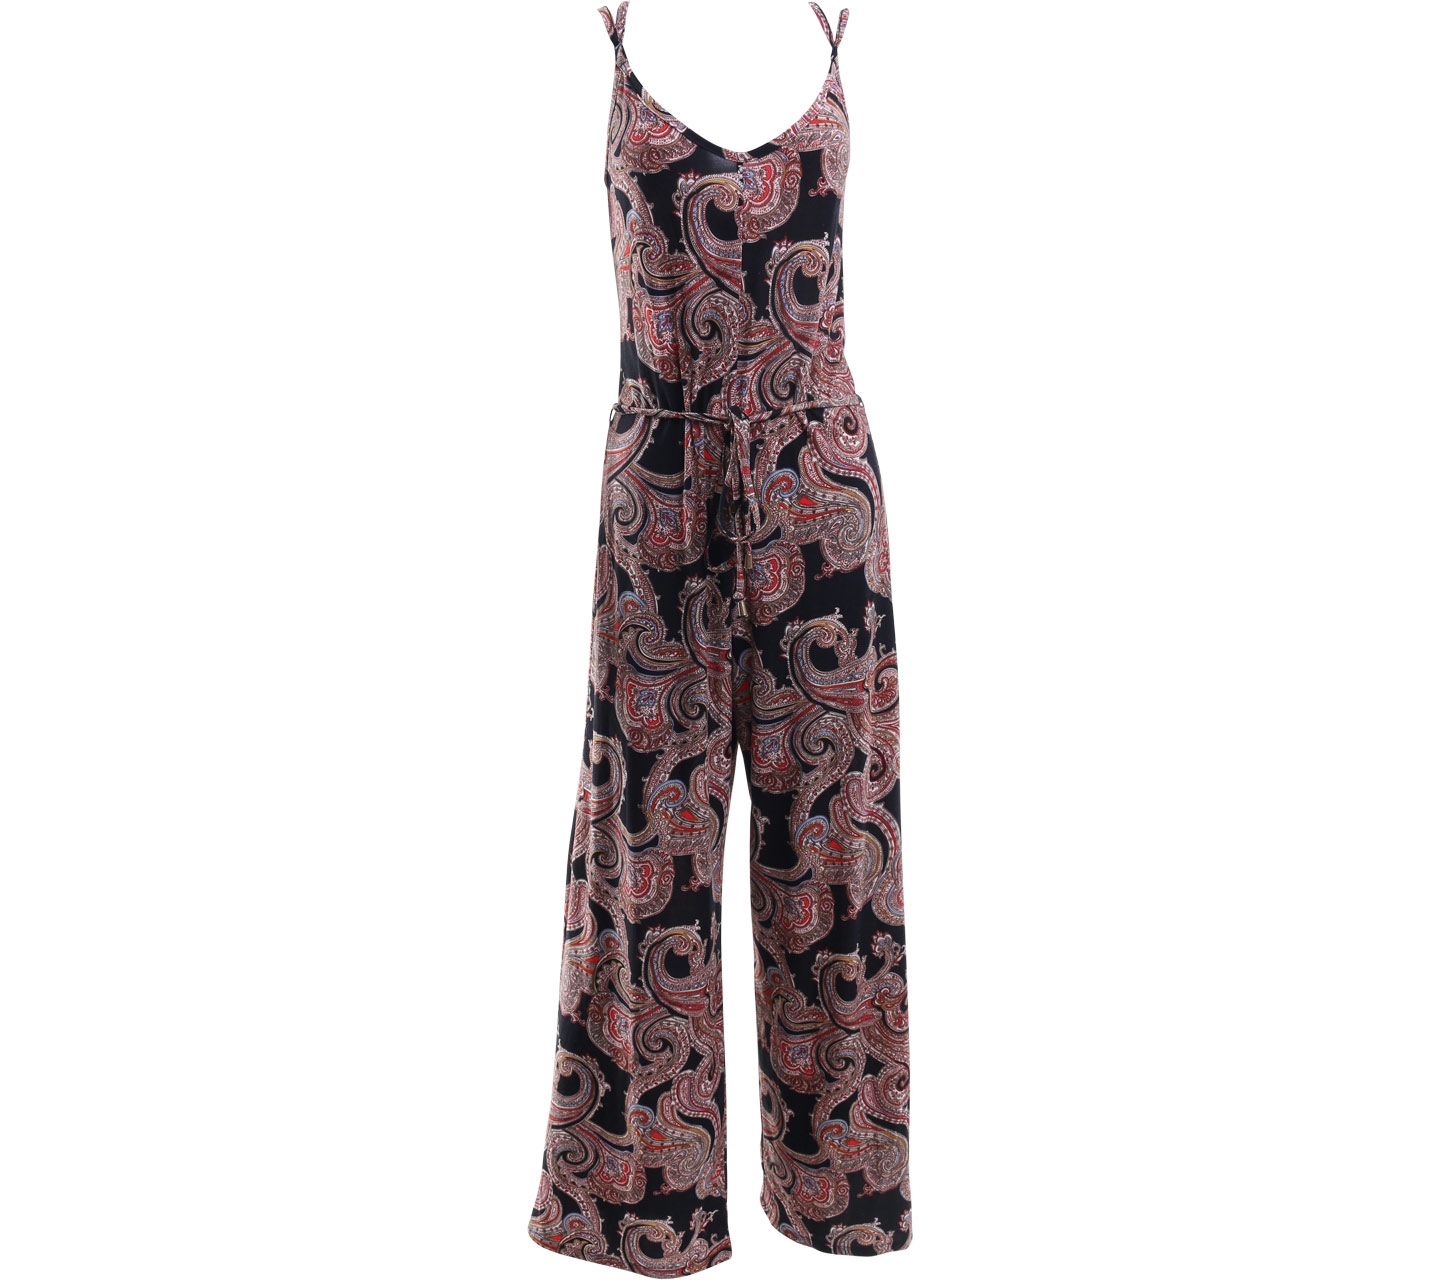 Shopbop patterned Jumpsuit